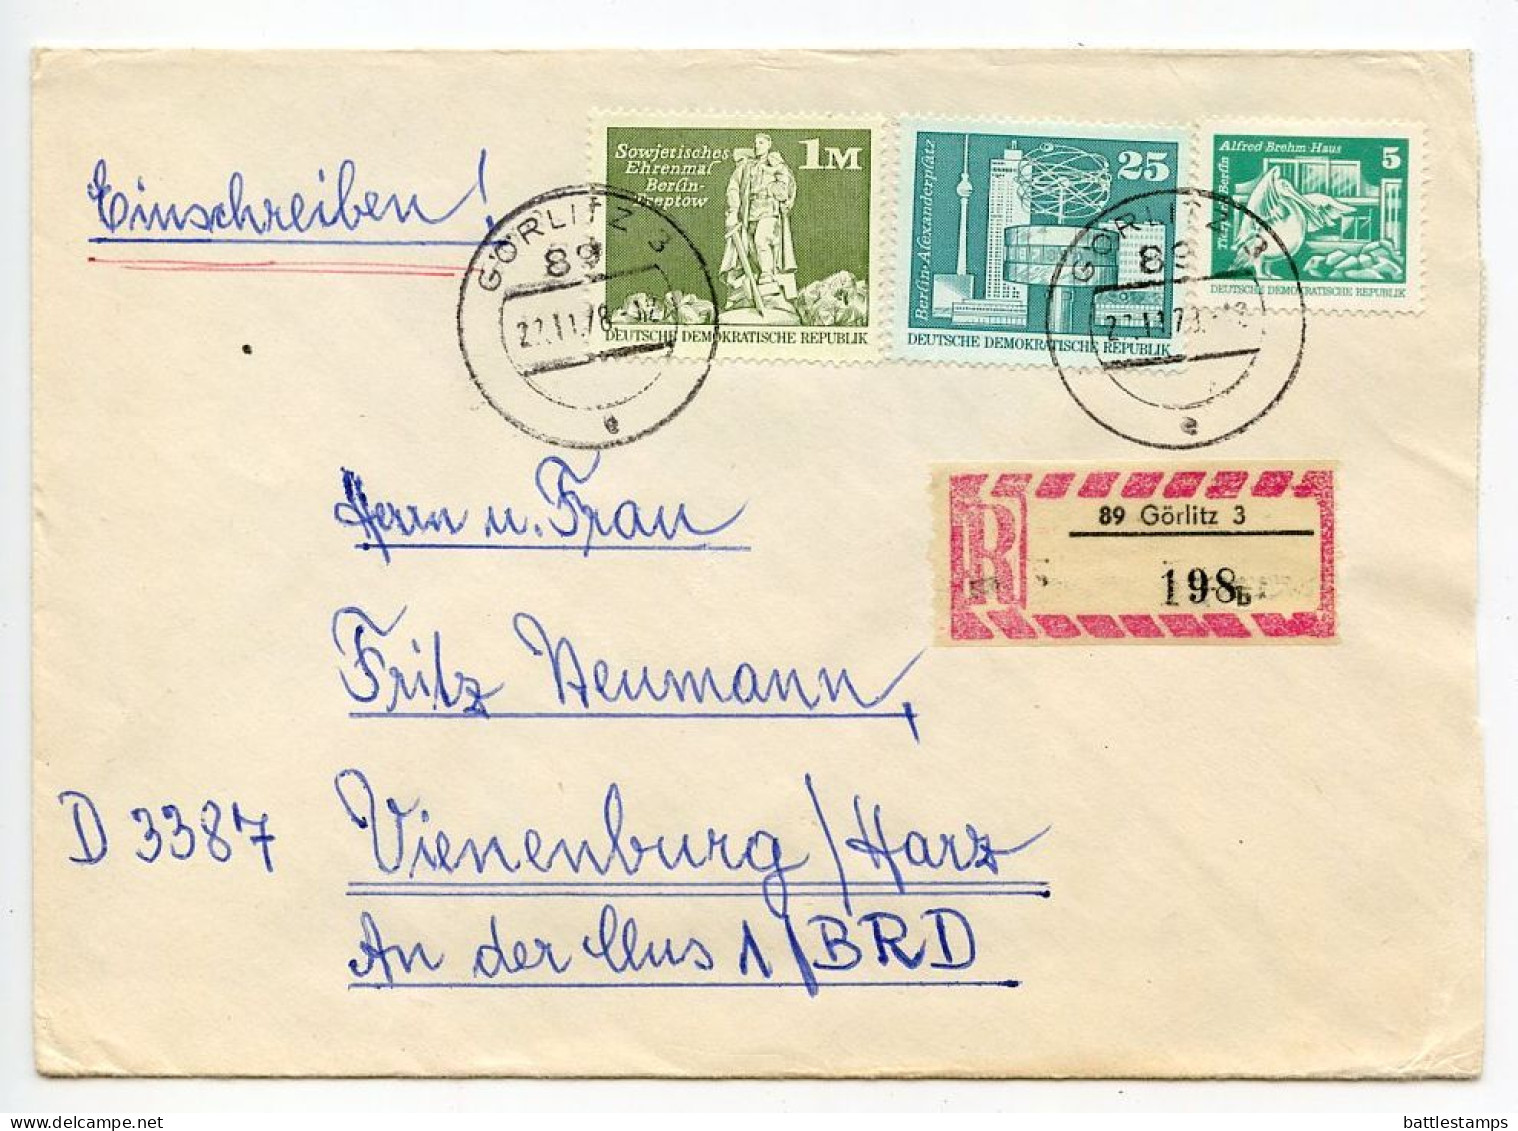 Germany East 1978 Registered Cover; Görlitz To Vienenburg; Mix Of Stamps; Tauschsendung Exchange Control Label - Cartas & Documentos